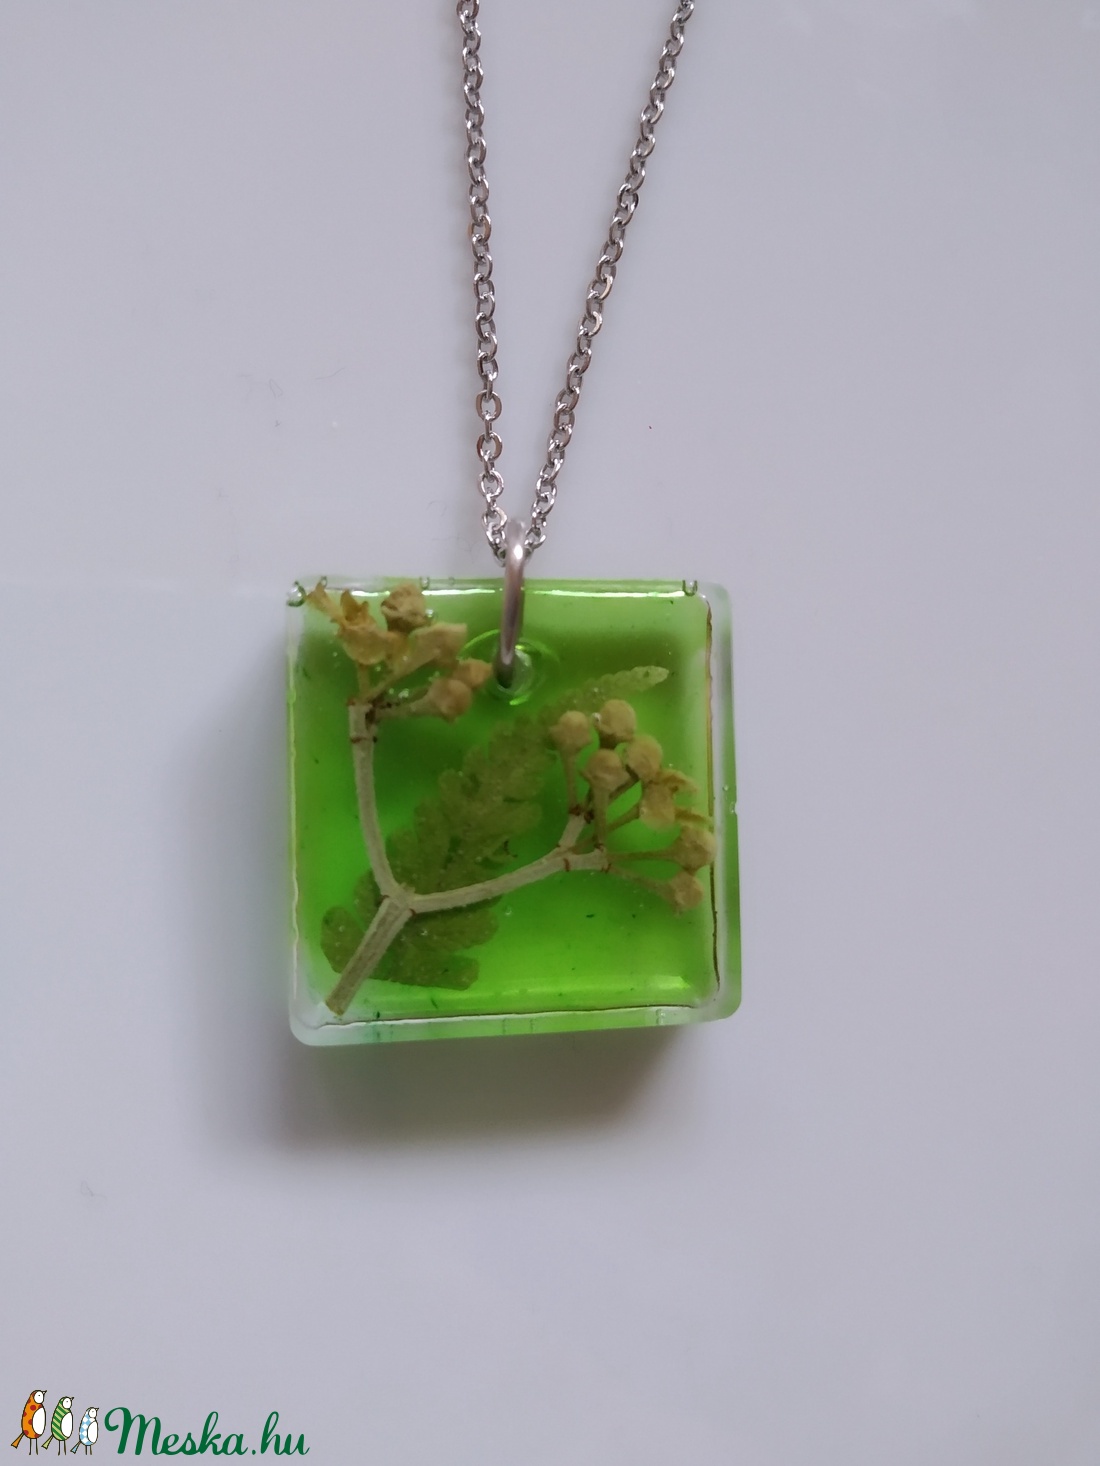 Zöld műgyanta medál nemesacél láncon - műgyanta ékszer antiallergén nyakláncon - páfrány és bogyó négyzet alakú medálban - ékszer - nyaklánc - medálos nyaklánc - Meska.hu